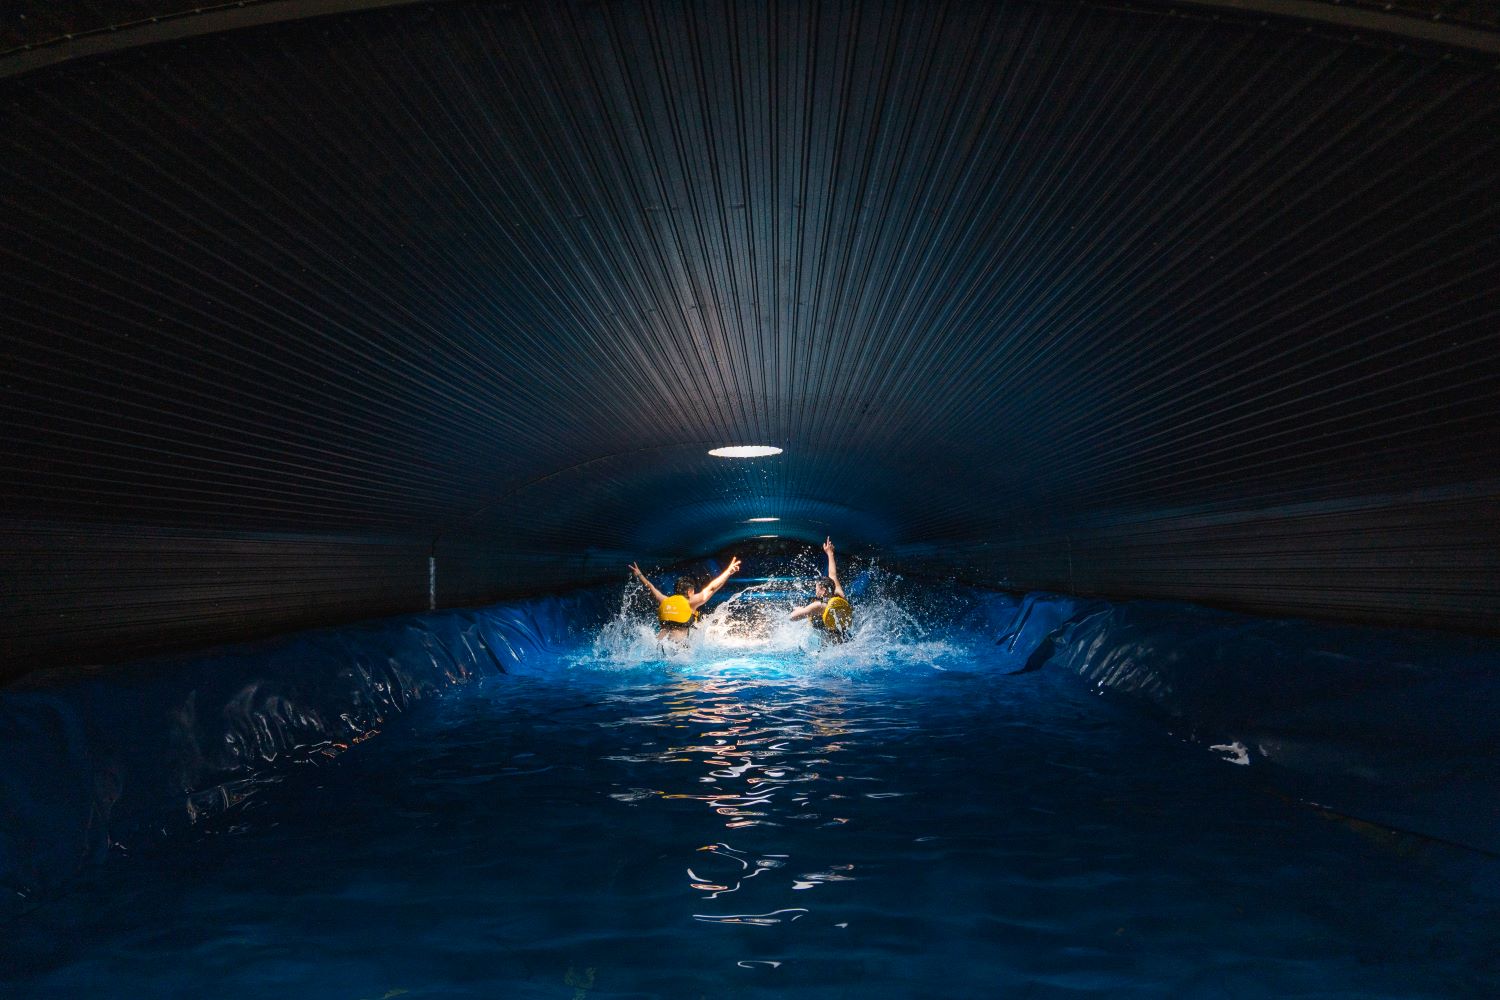 Hồ bơi ngầm mát lạnh, mô phỏng những hang nước ngầm ở khu vực VQG Phong Nha-Kẻ Bàng.